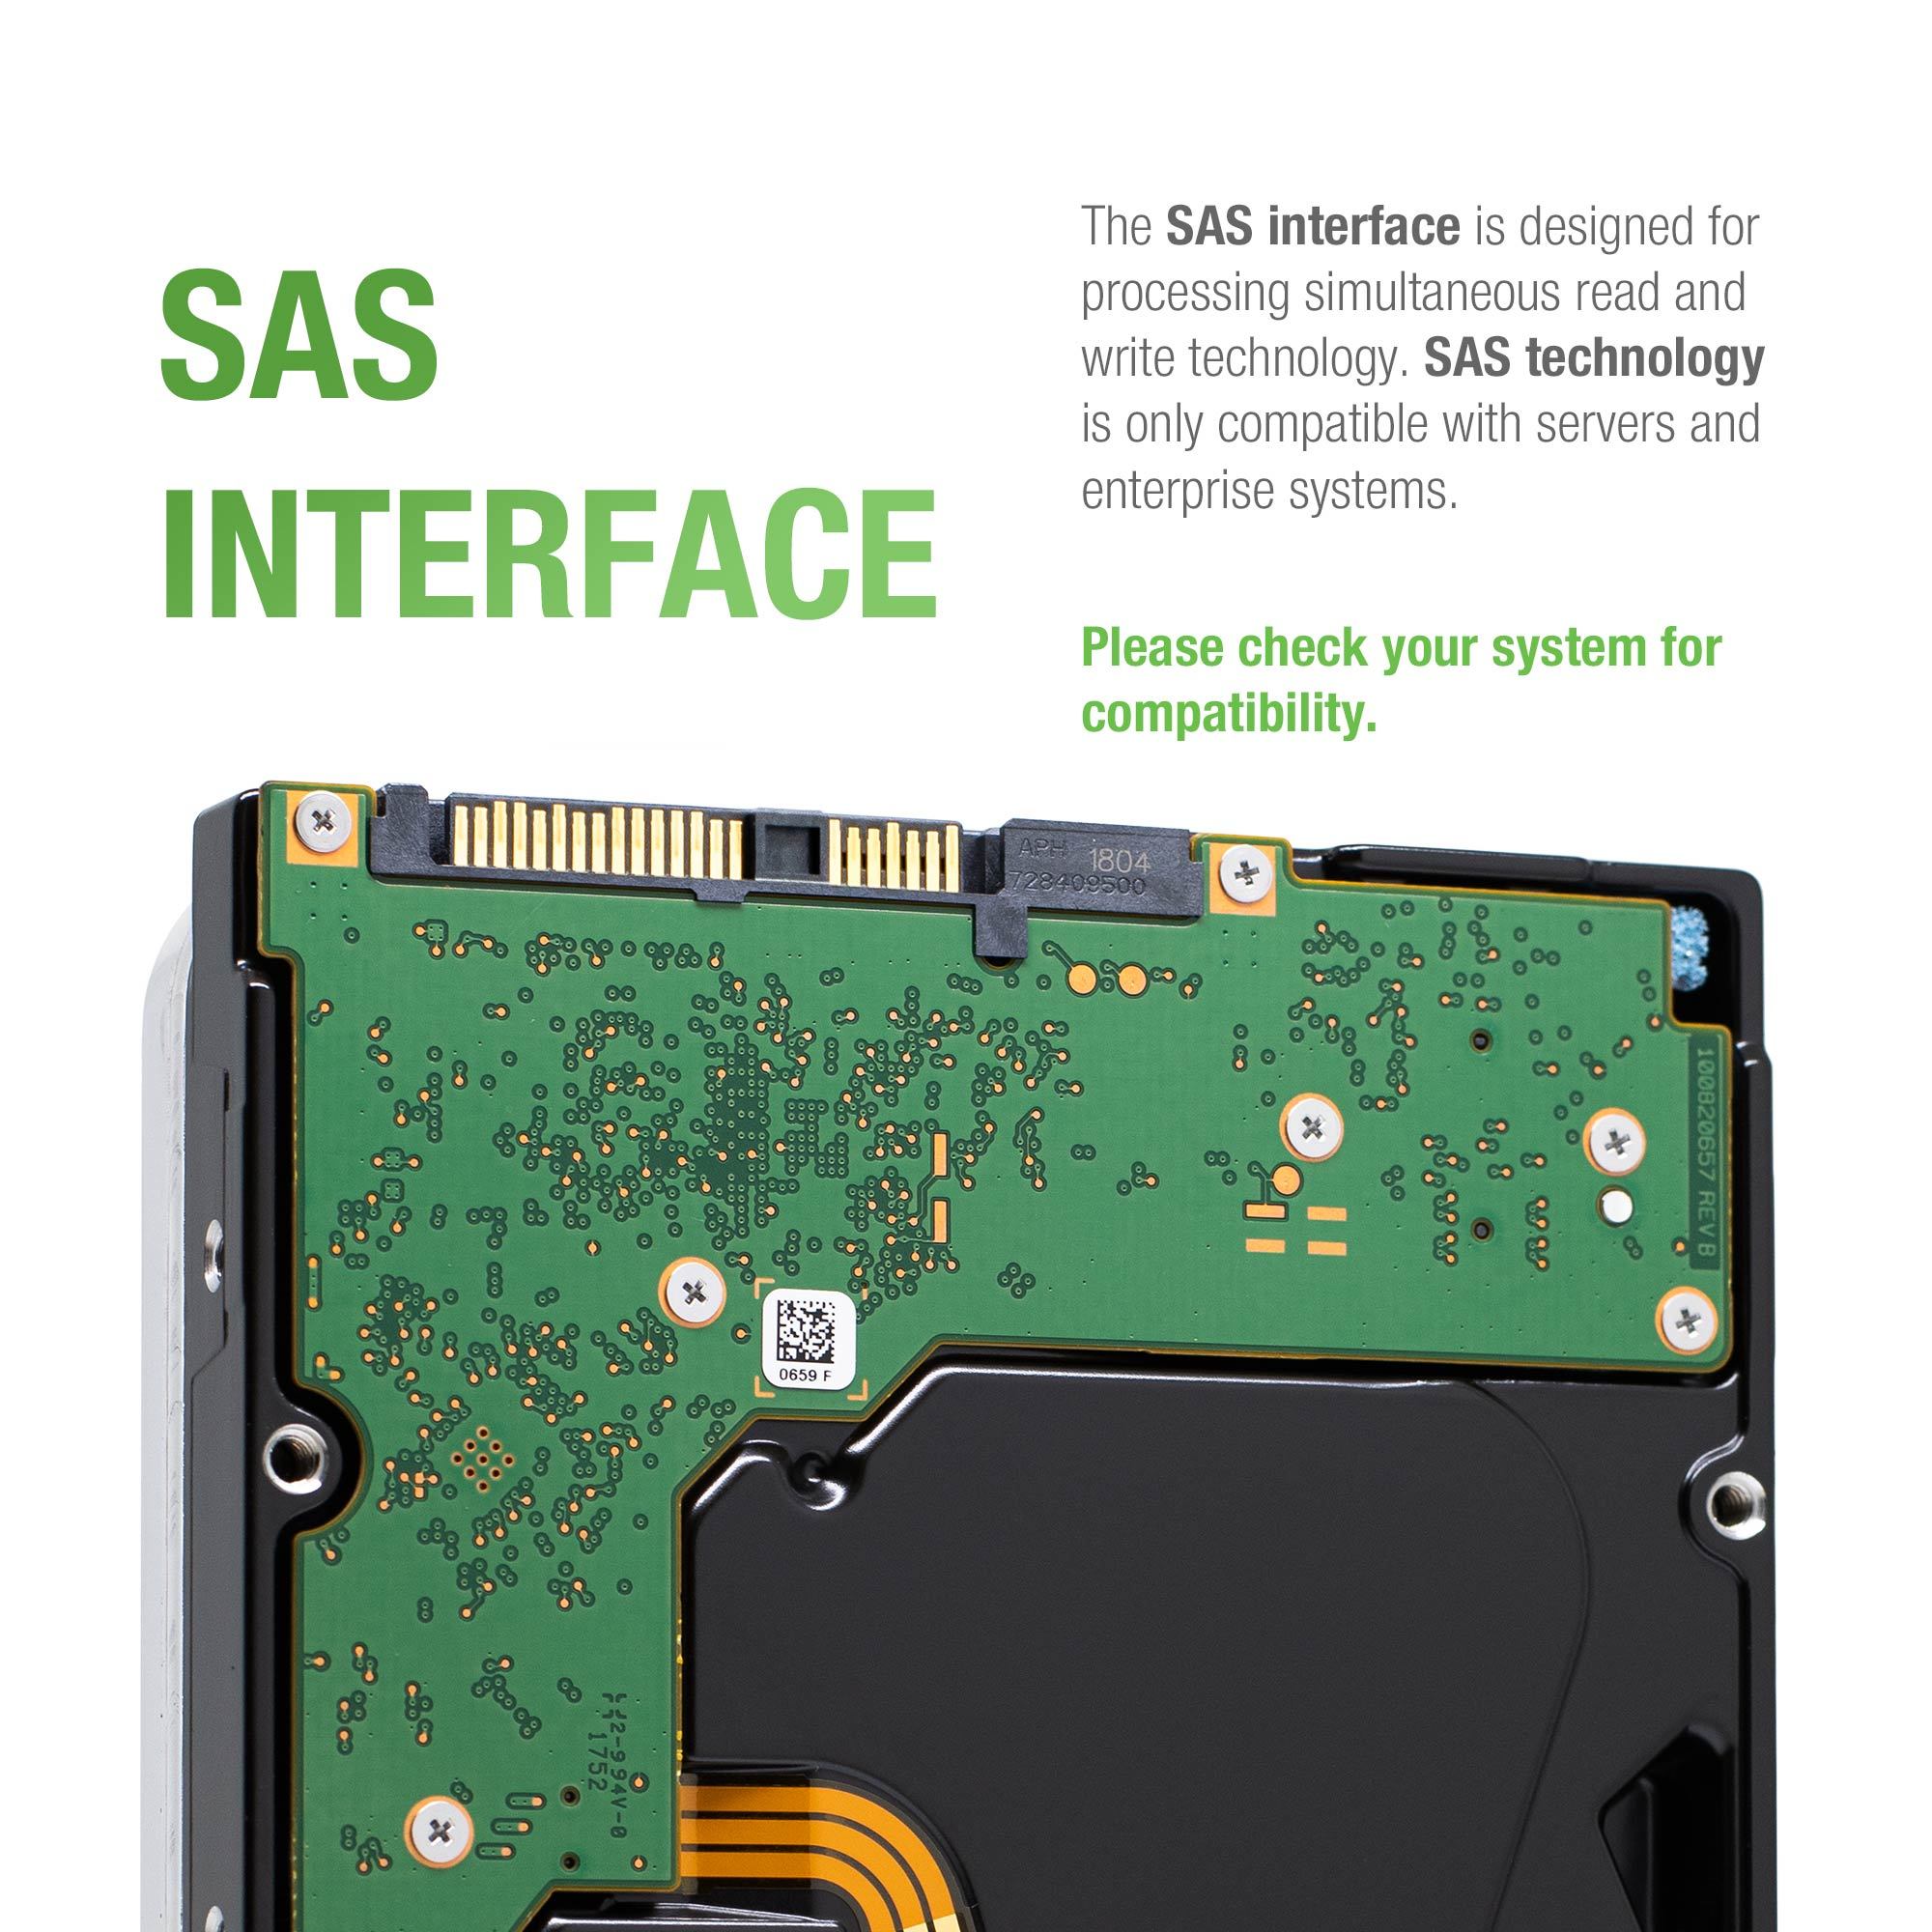 Seagate Exos 7E2000 ST1000NX0373 1TB 7.2K RPM SAS 12Gb/s 512e 128MB 2.5" SED Hard Drive - SAS Interface